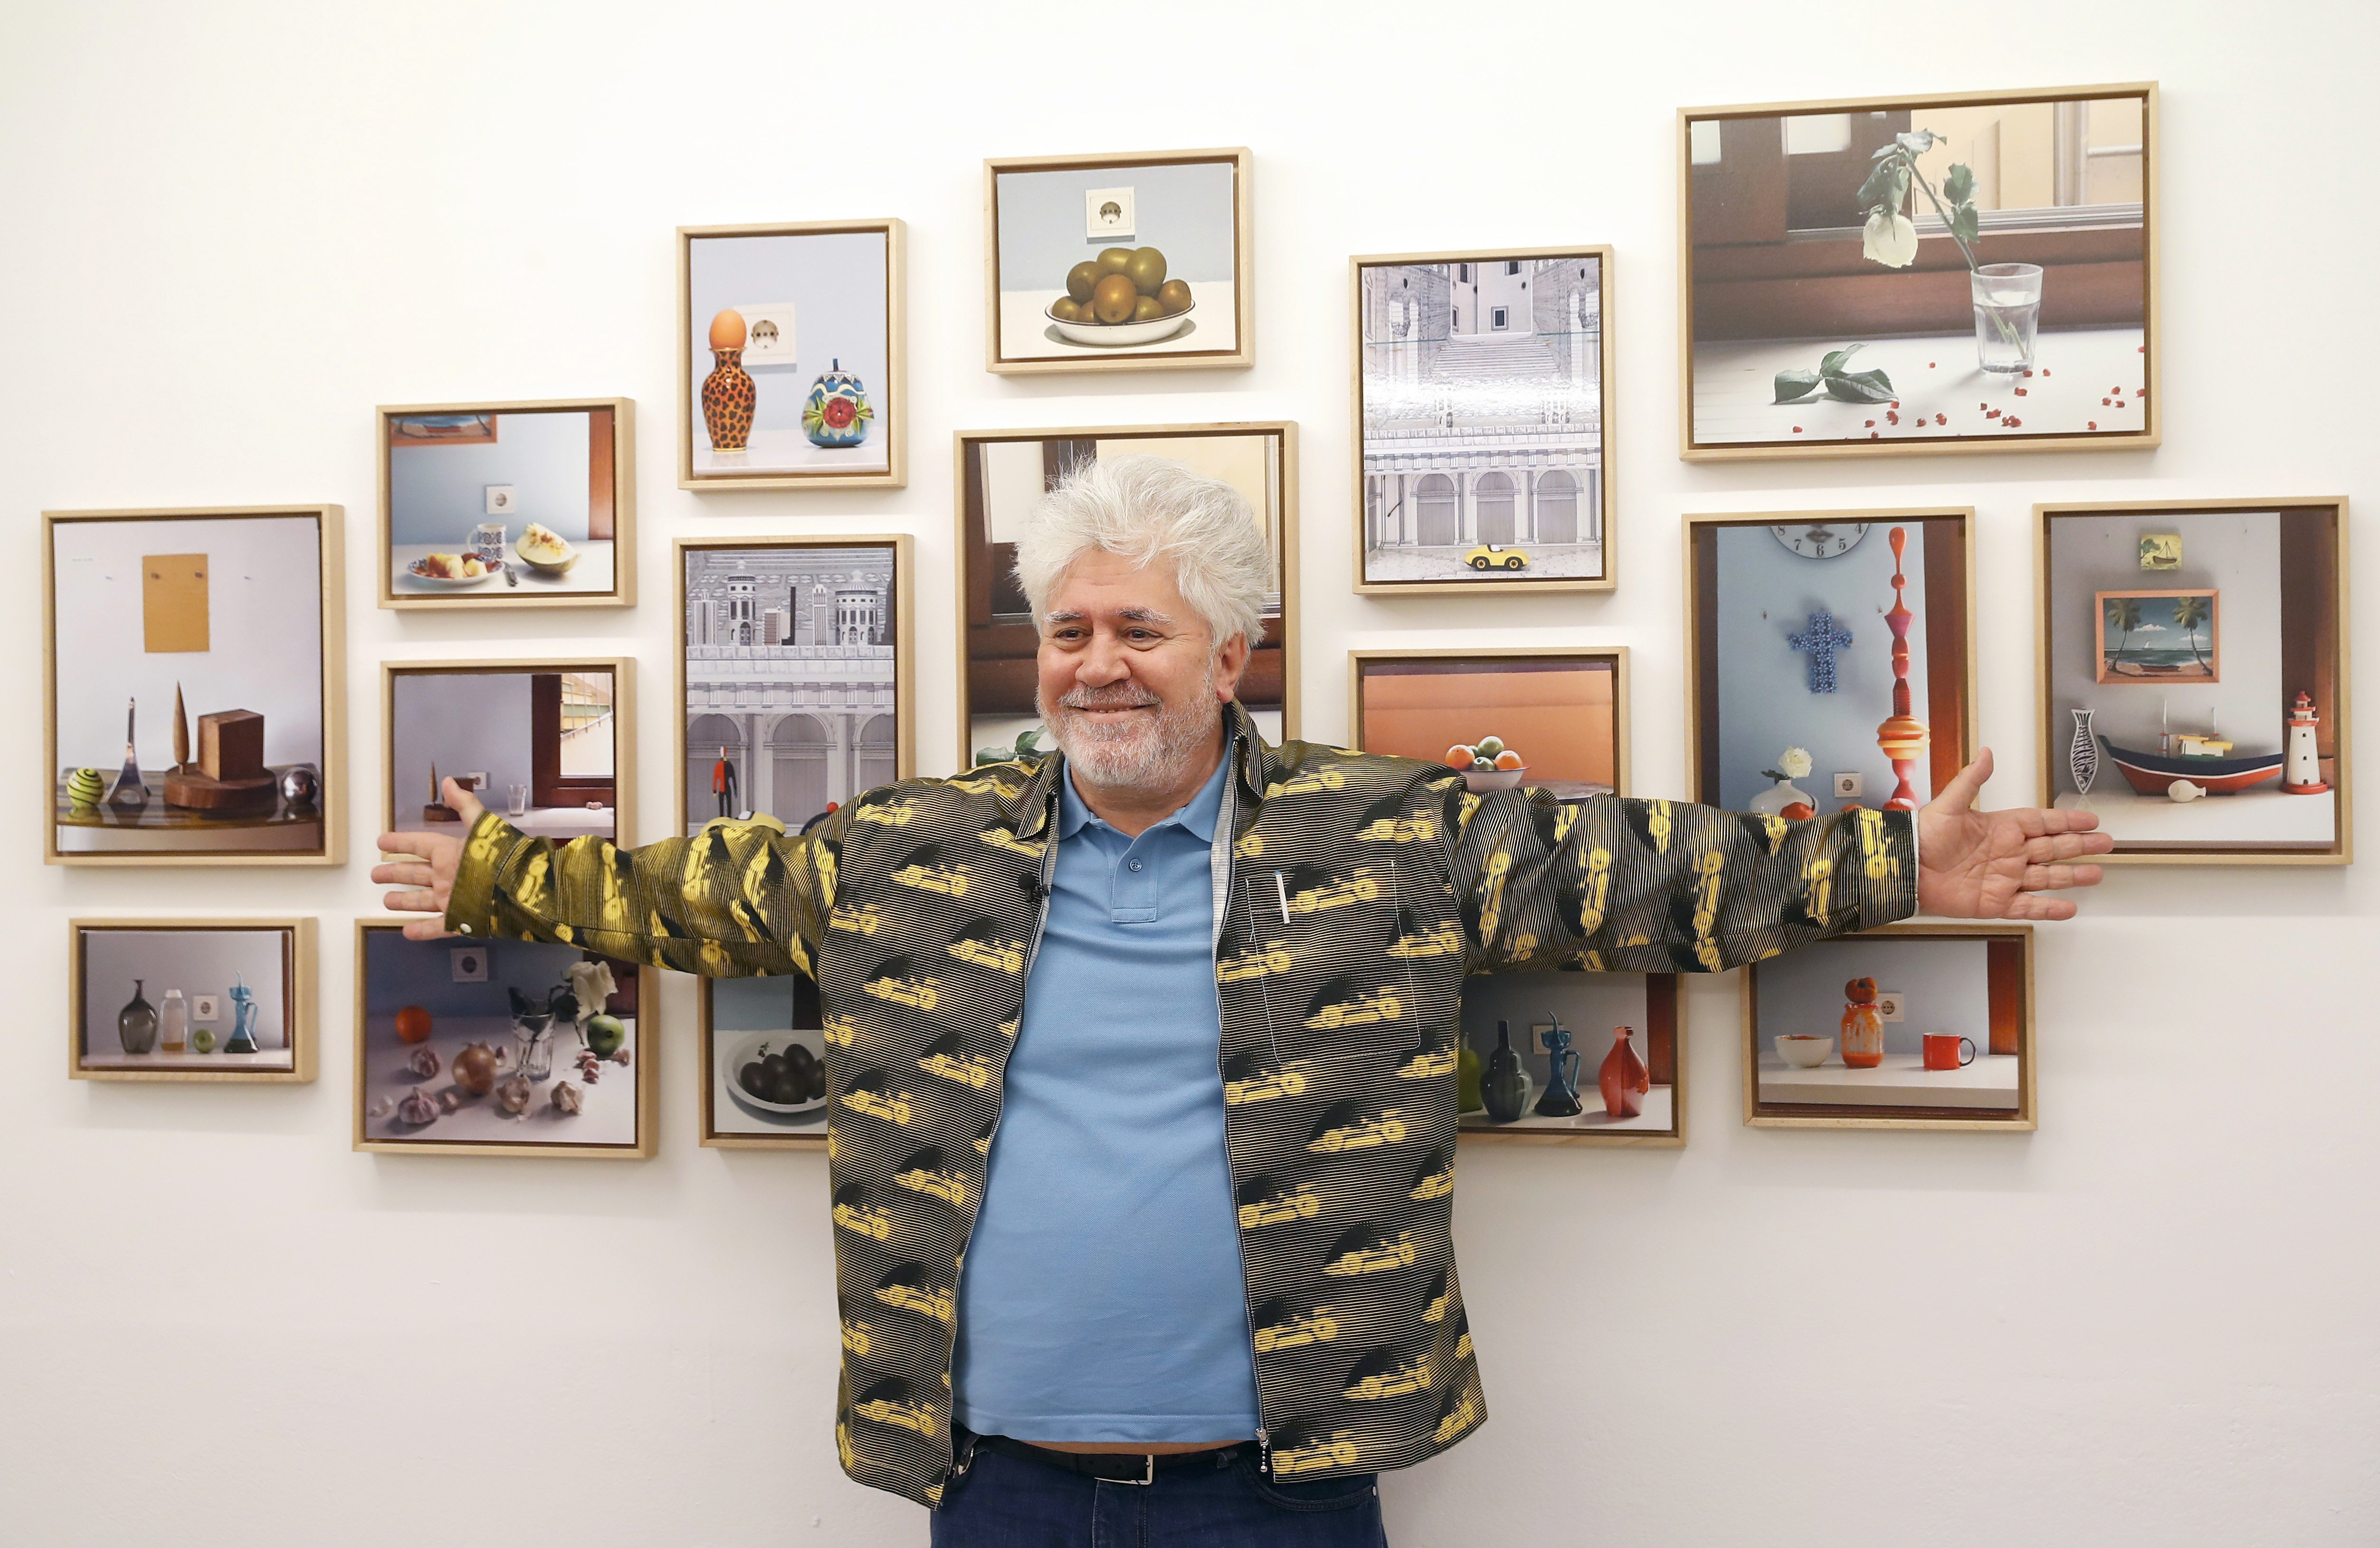  Pedro Almodóvar fotógrafo expone en galería de Madrid